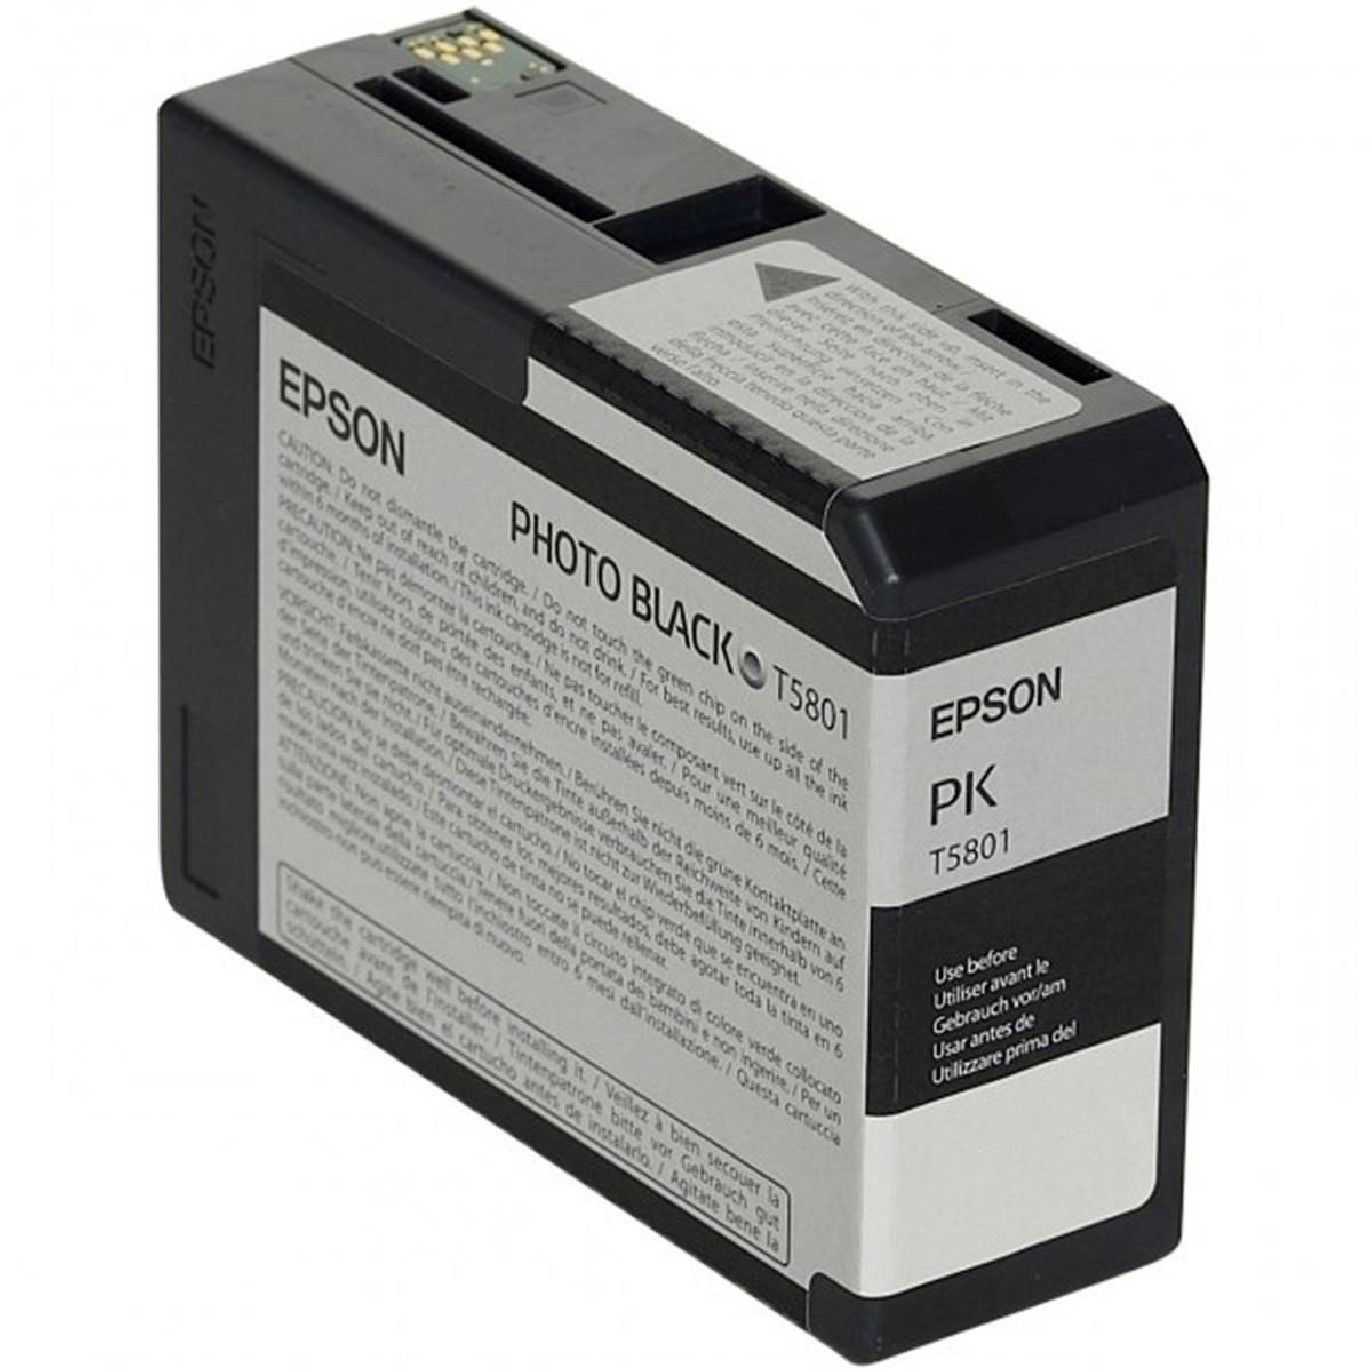 Achetez 1 Obtenez 1 Gratuit ! Encre pigmentaire universelle pour  imprimantes jet d'encre Epson Tous les modèles Waterproof Couleurs vives  Impression Encre Bk C M Y